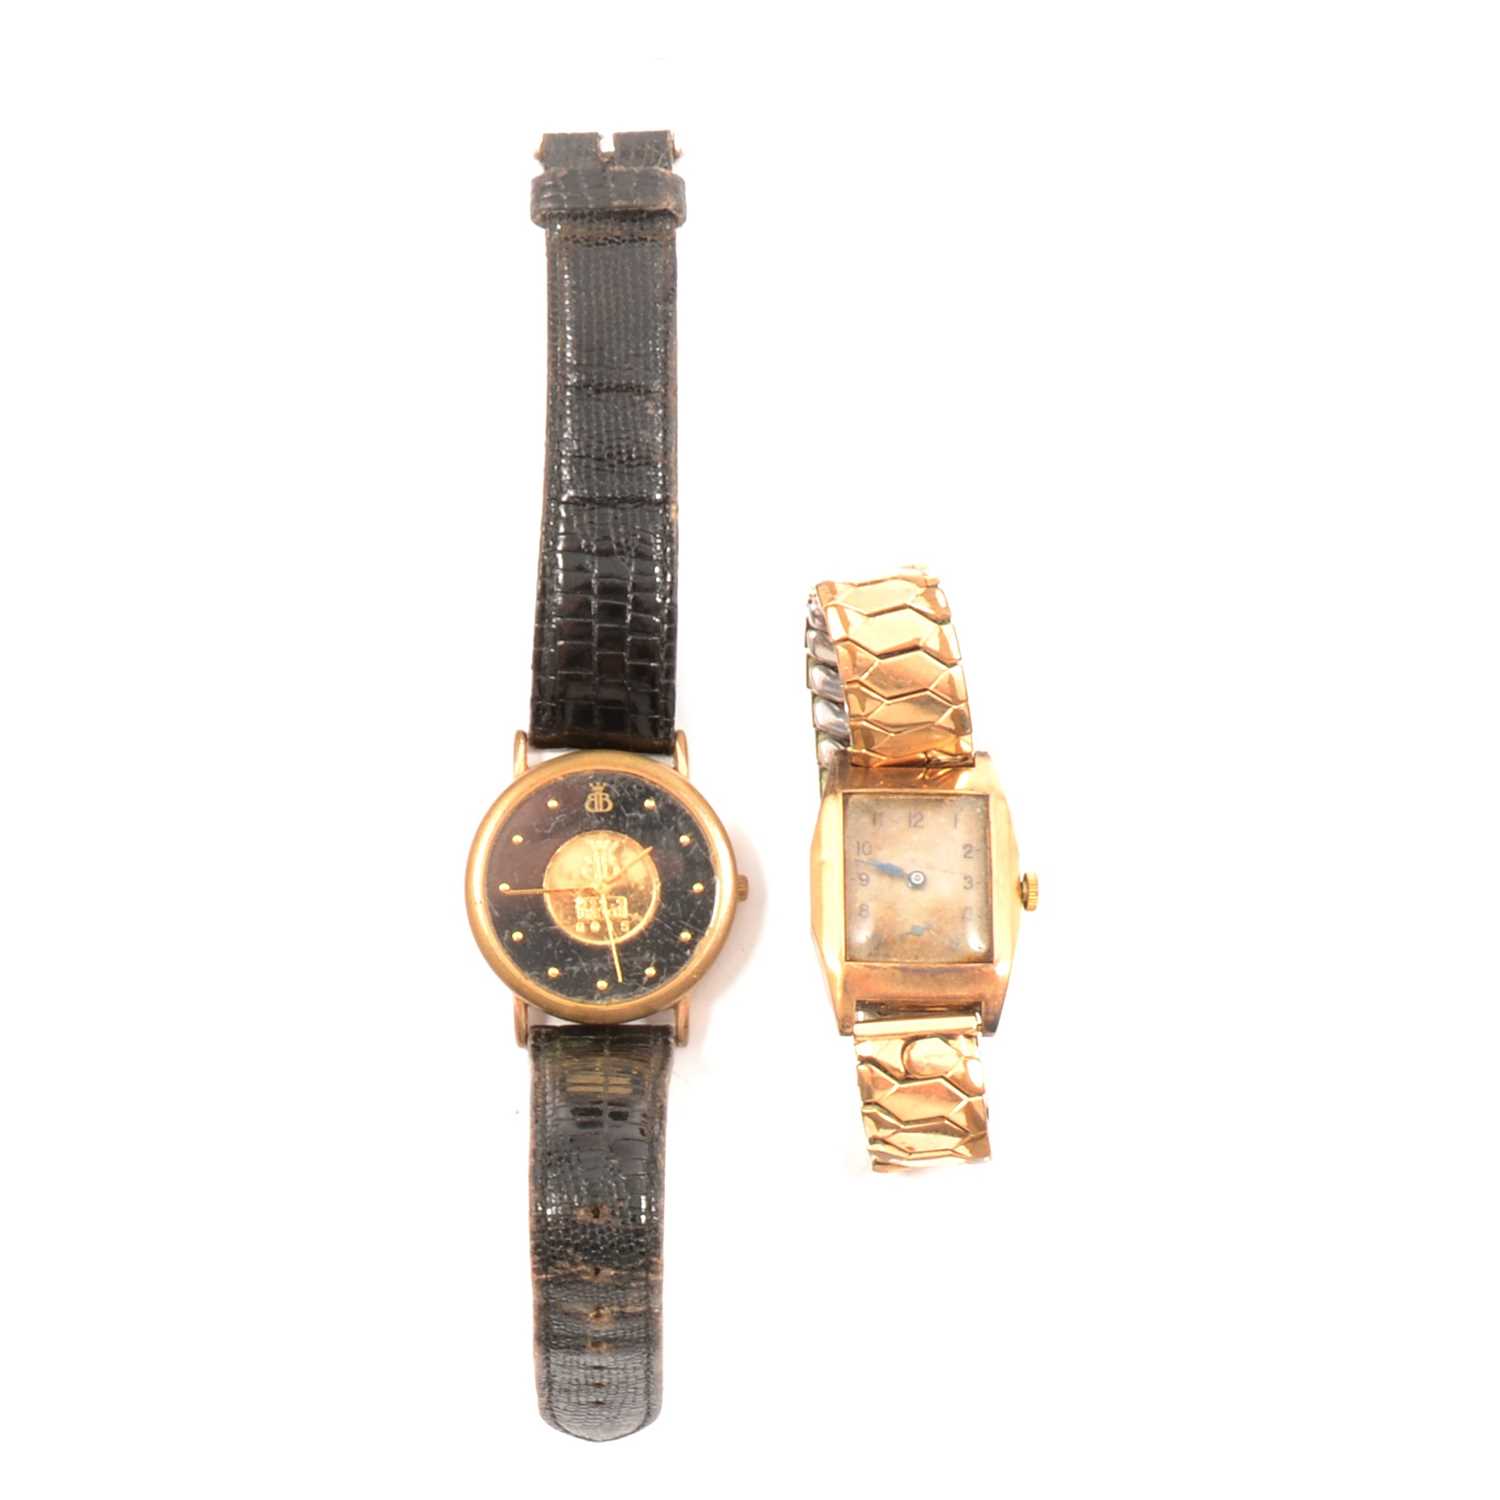 Lot 323 - J W Benson London - a 9 carat gold gentleman's wristwatch, a modern gold-plated watch, and a fertility charm.